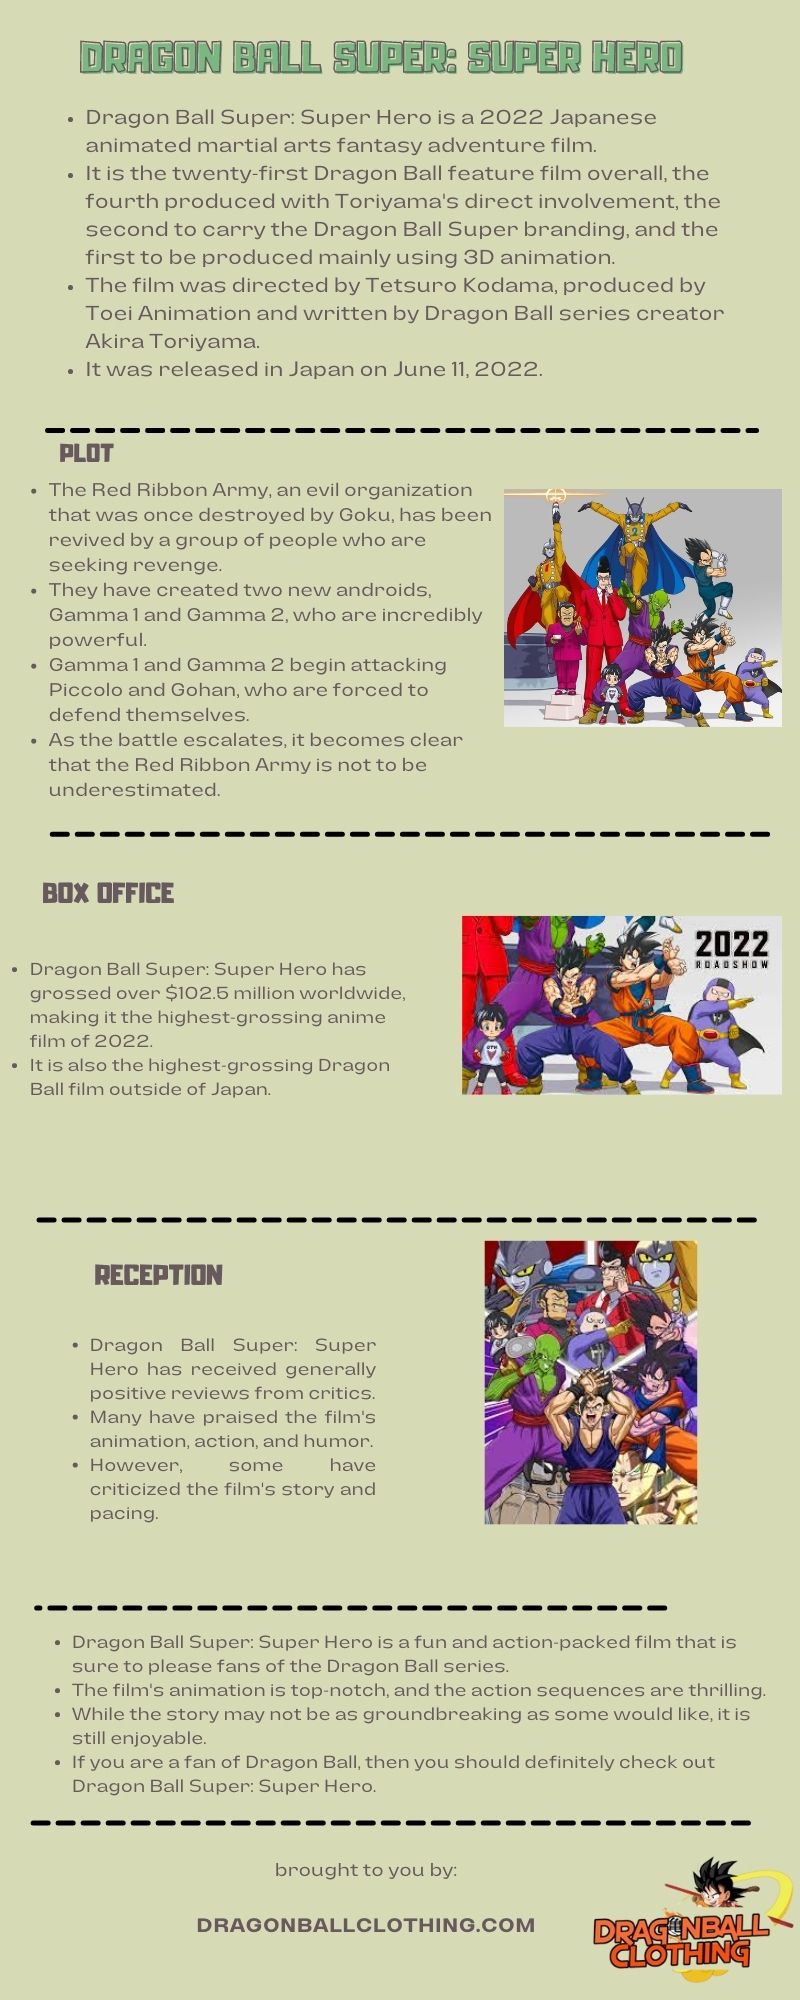 Dragon Ball Super Super Hero infographic